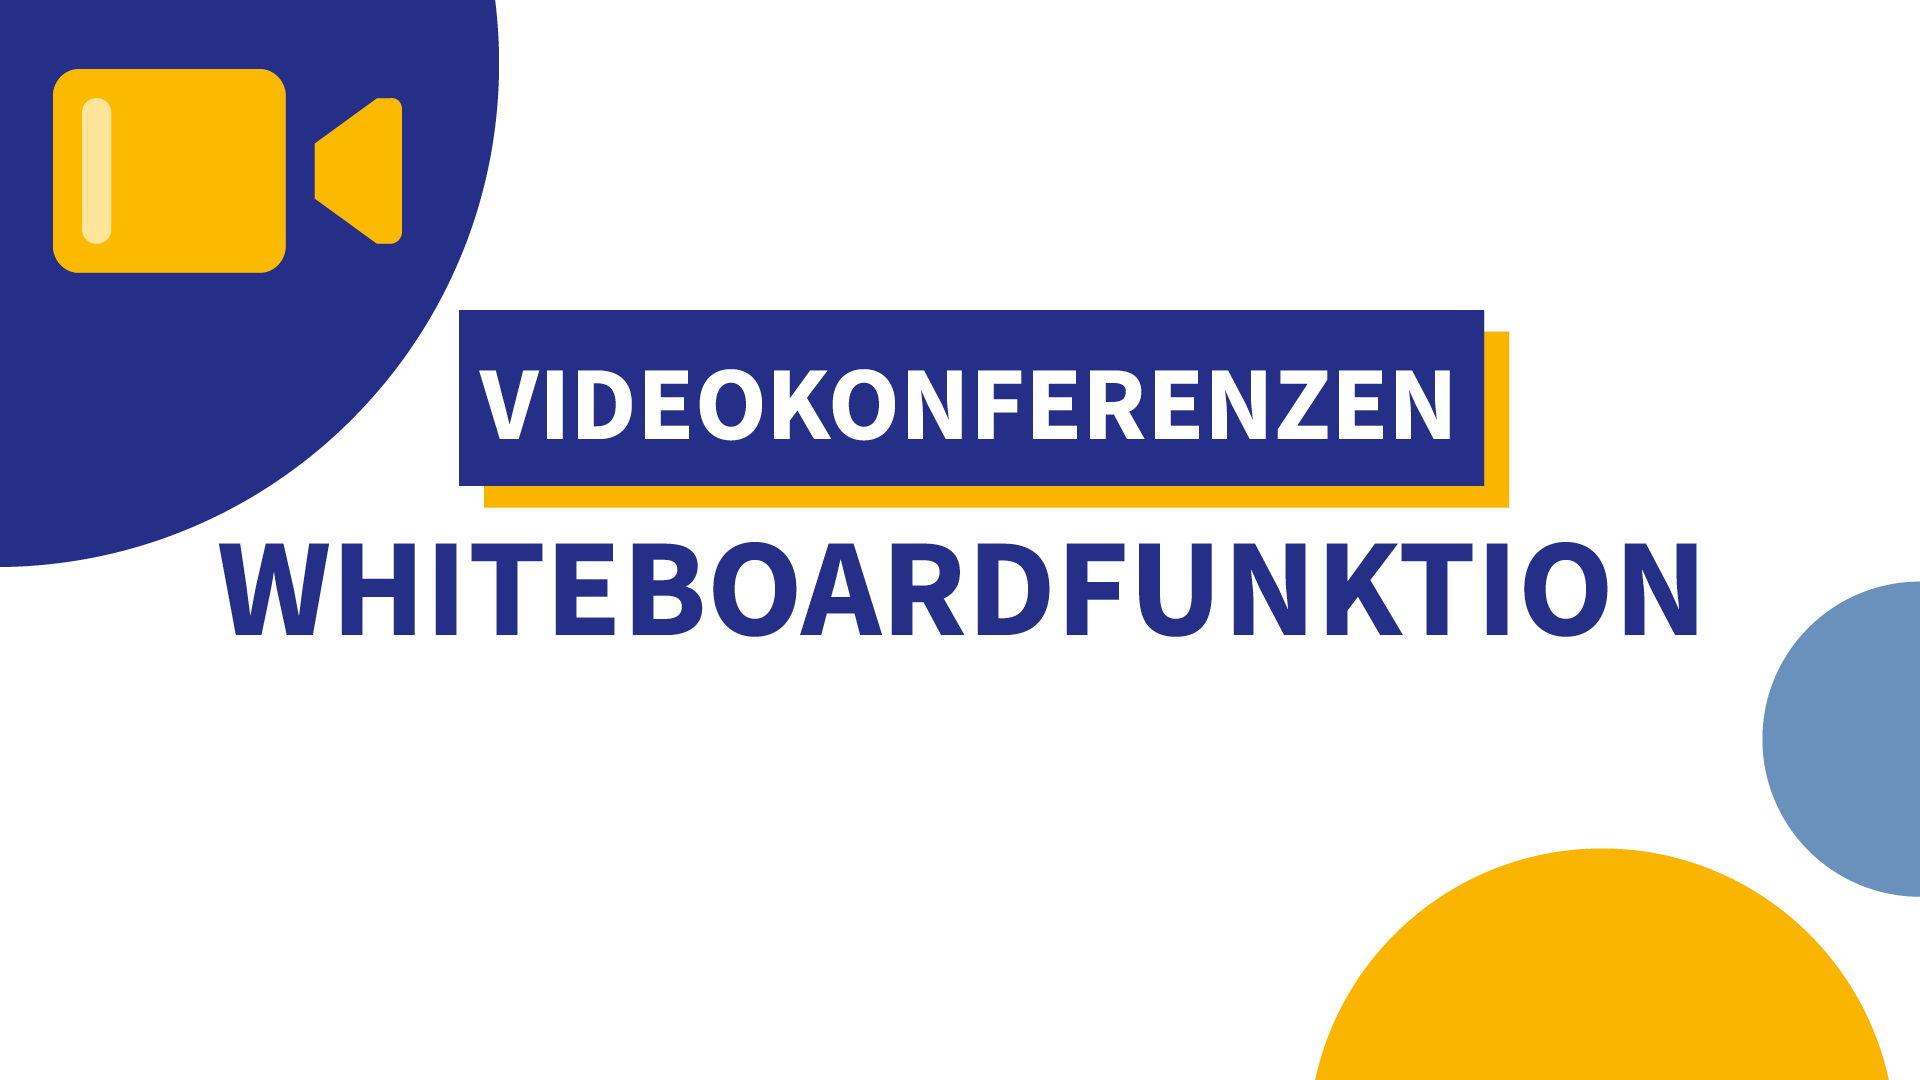 Whiteboardfunktion in Videokonferenzen